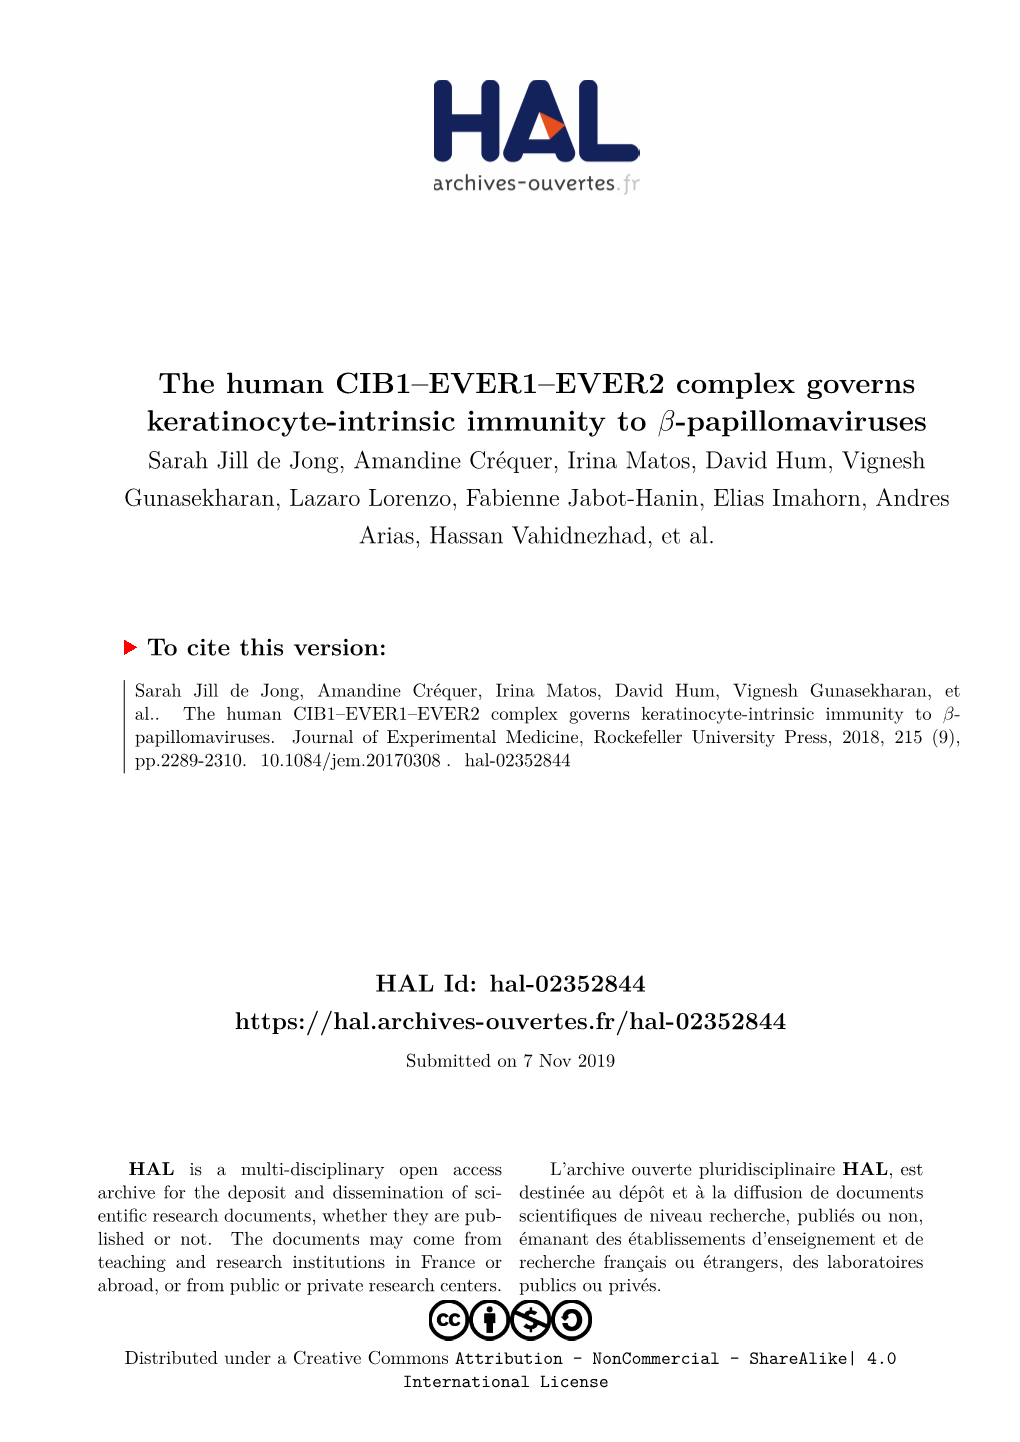 The Human CIB1–EVER1–EVER2 Complex Governs Keratinocyte